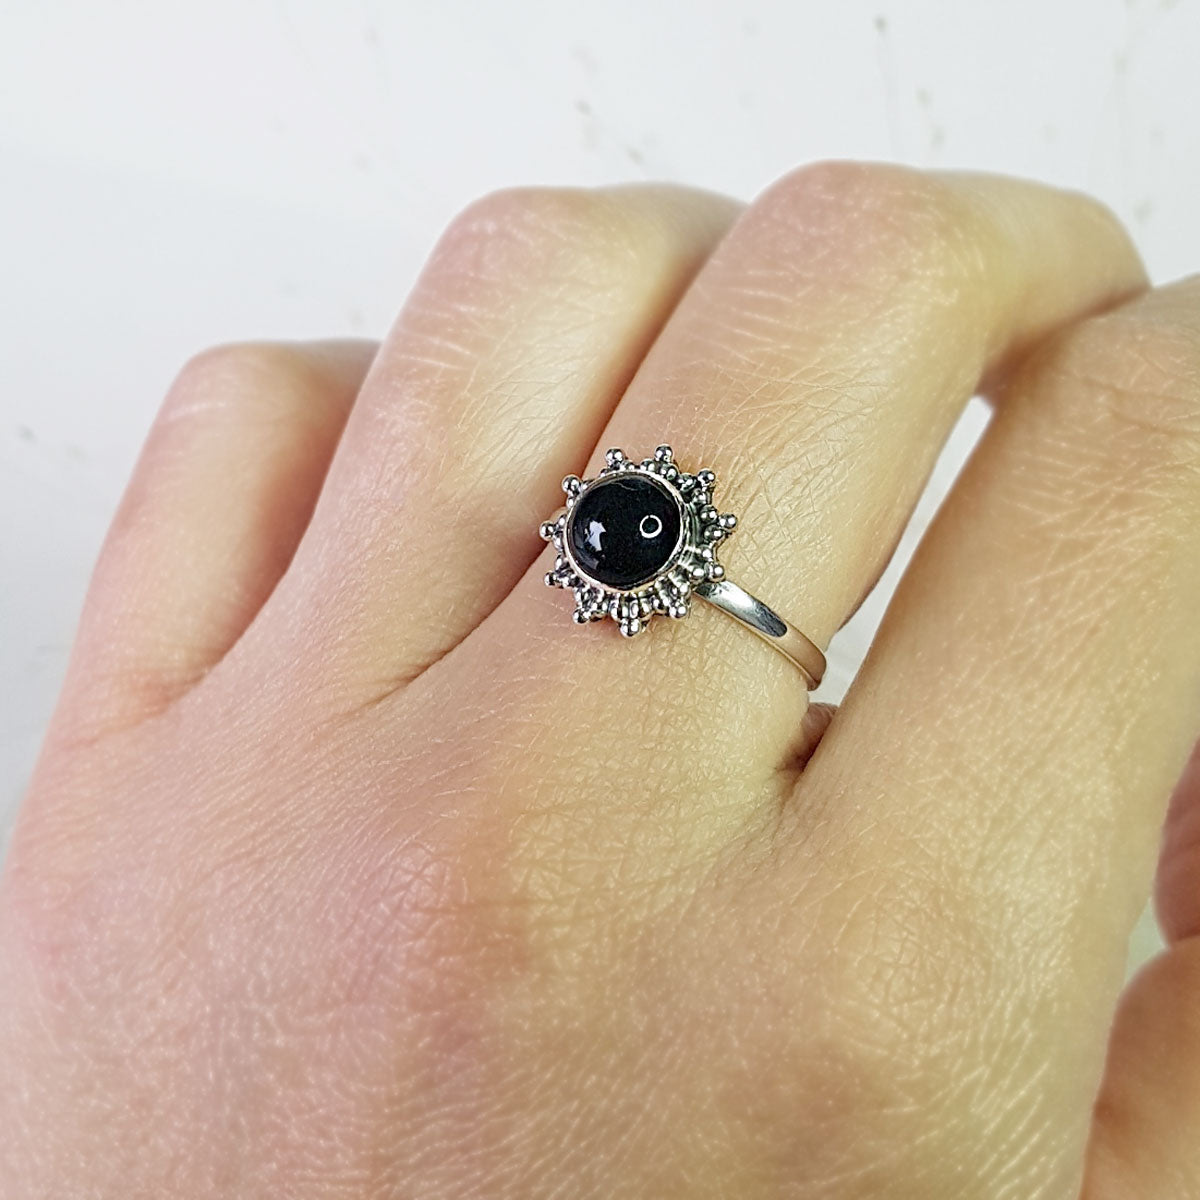 Cemara | Ring 925 zilver met zwarte onyx edelsteen